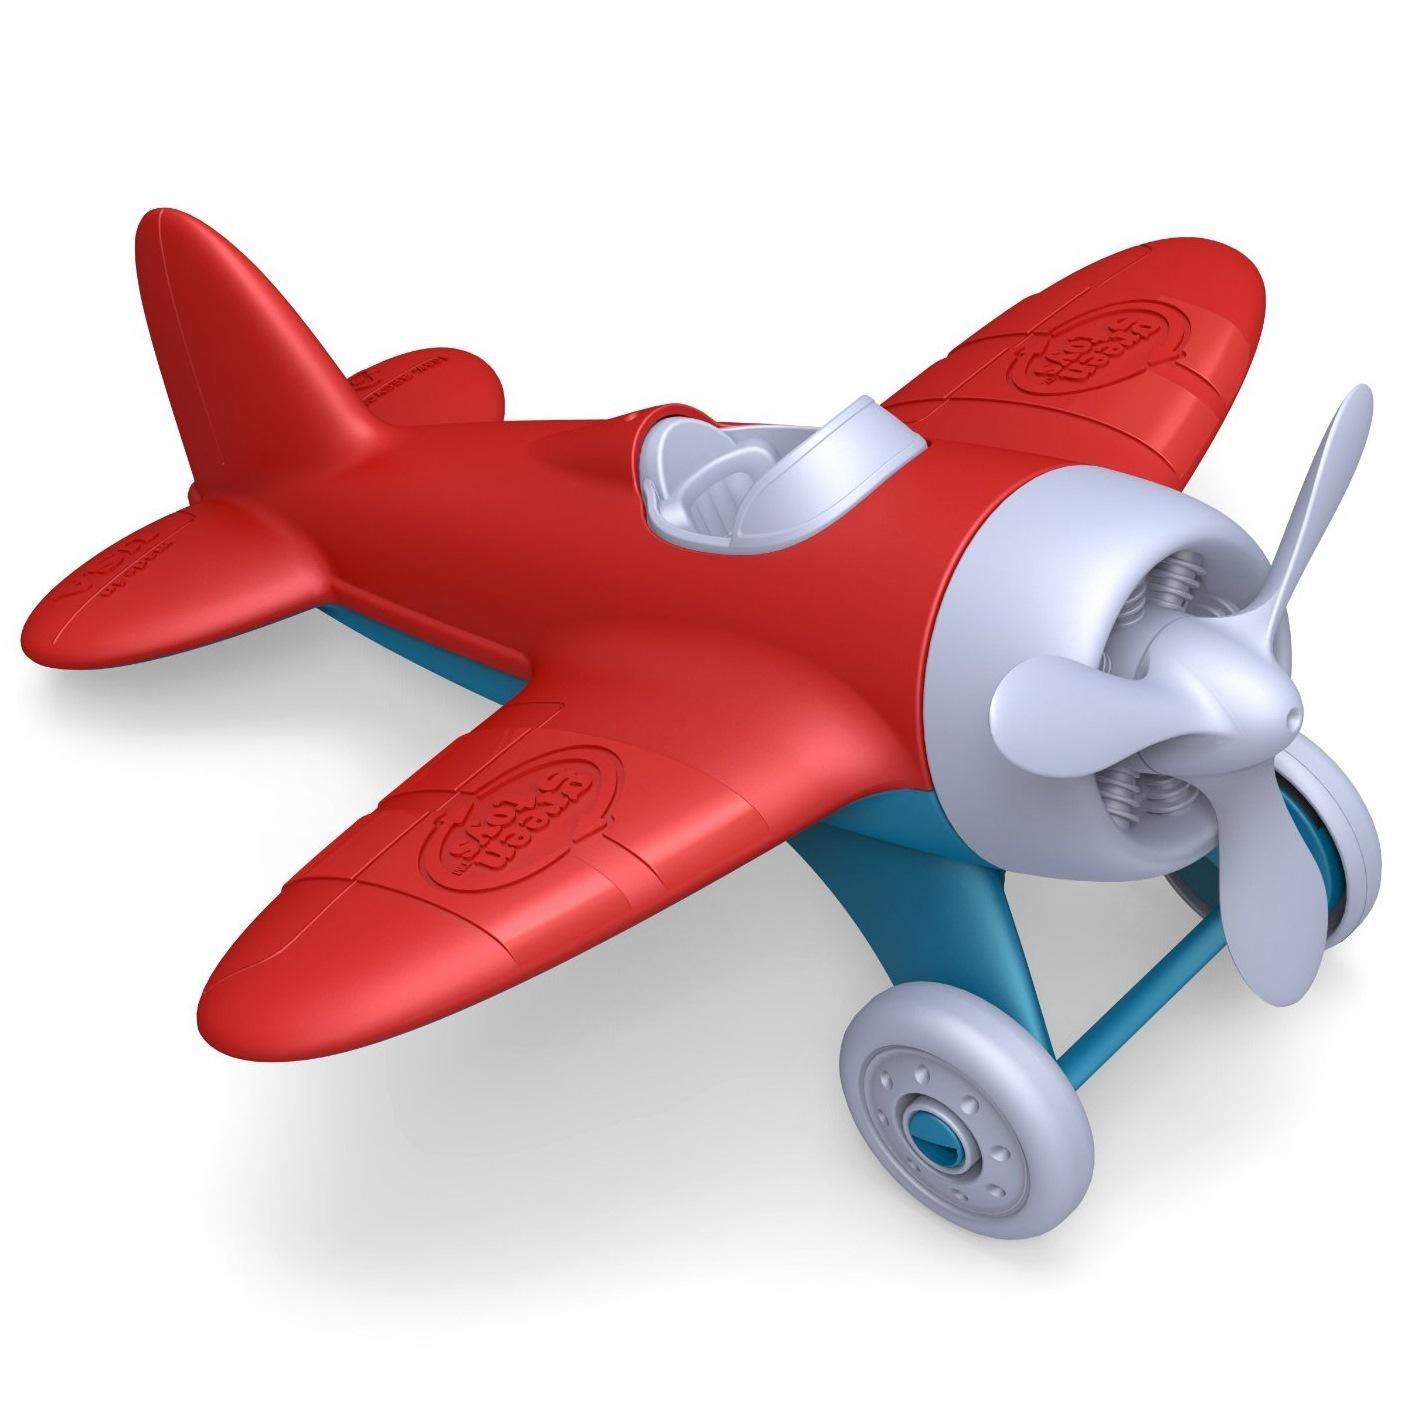 a toy plane